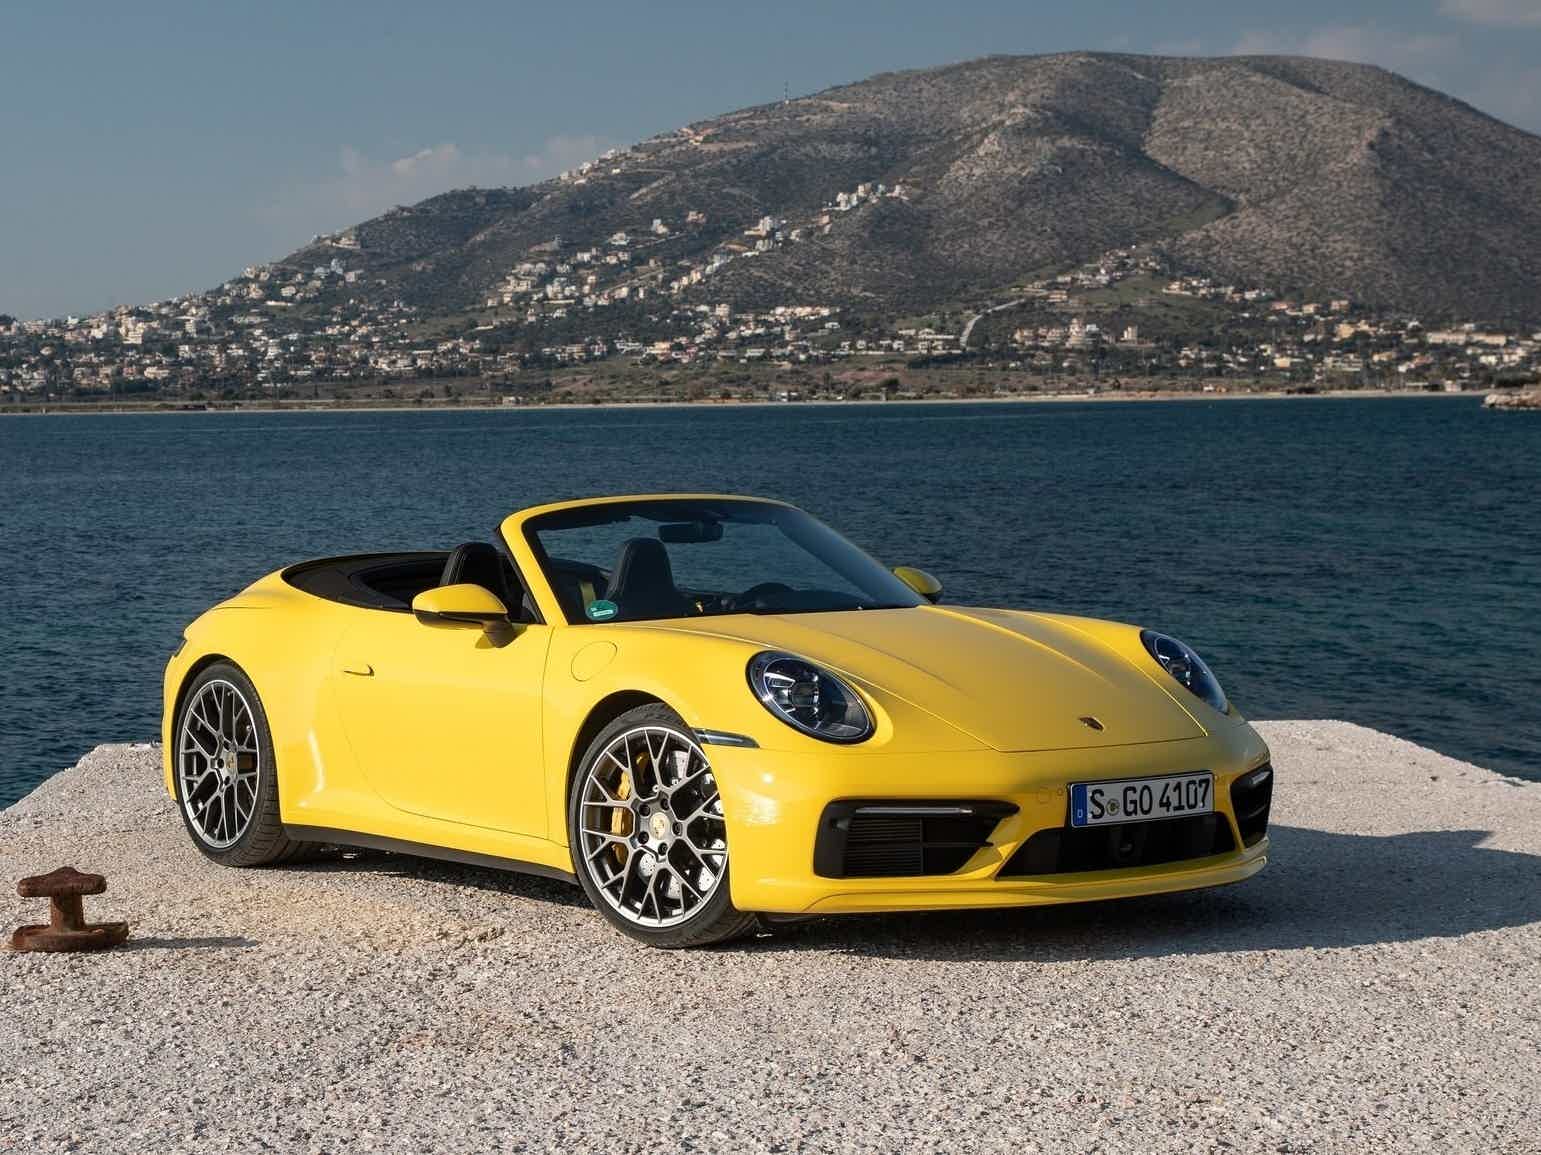 Por que veículos da Porsche estão tão valorizados? Fonte: UOL